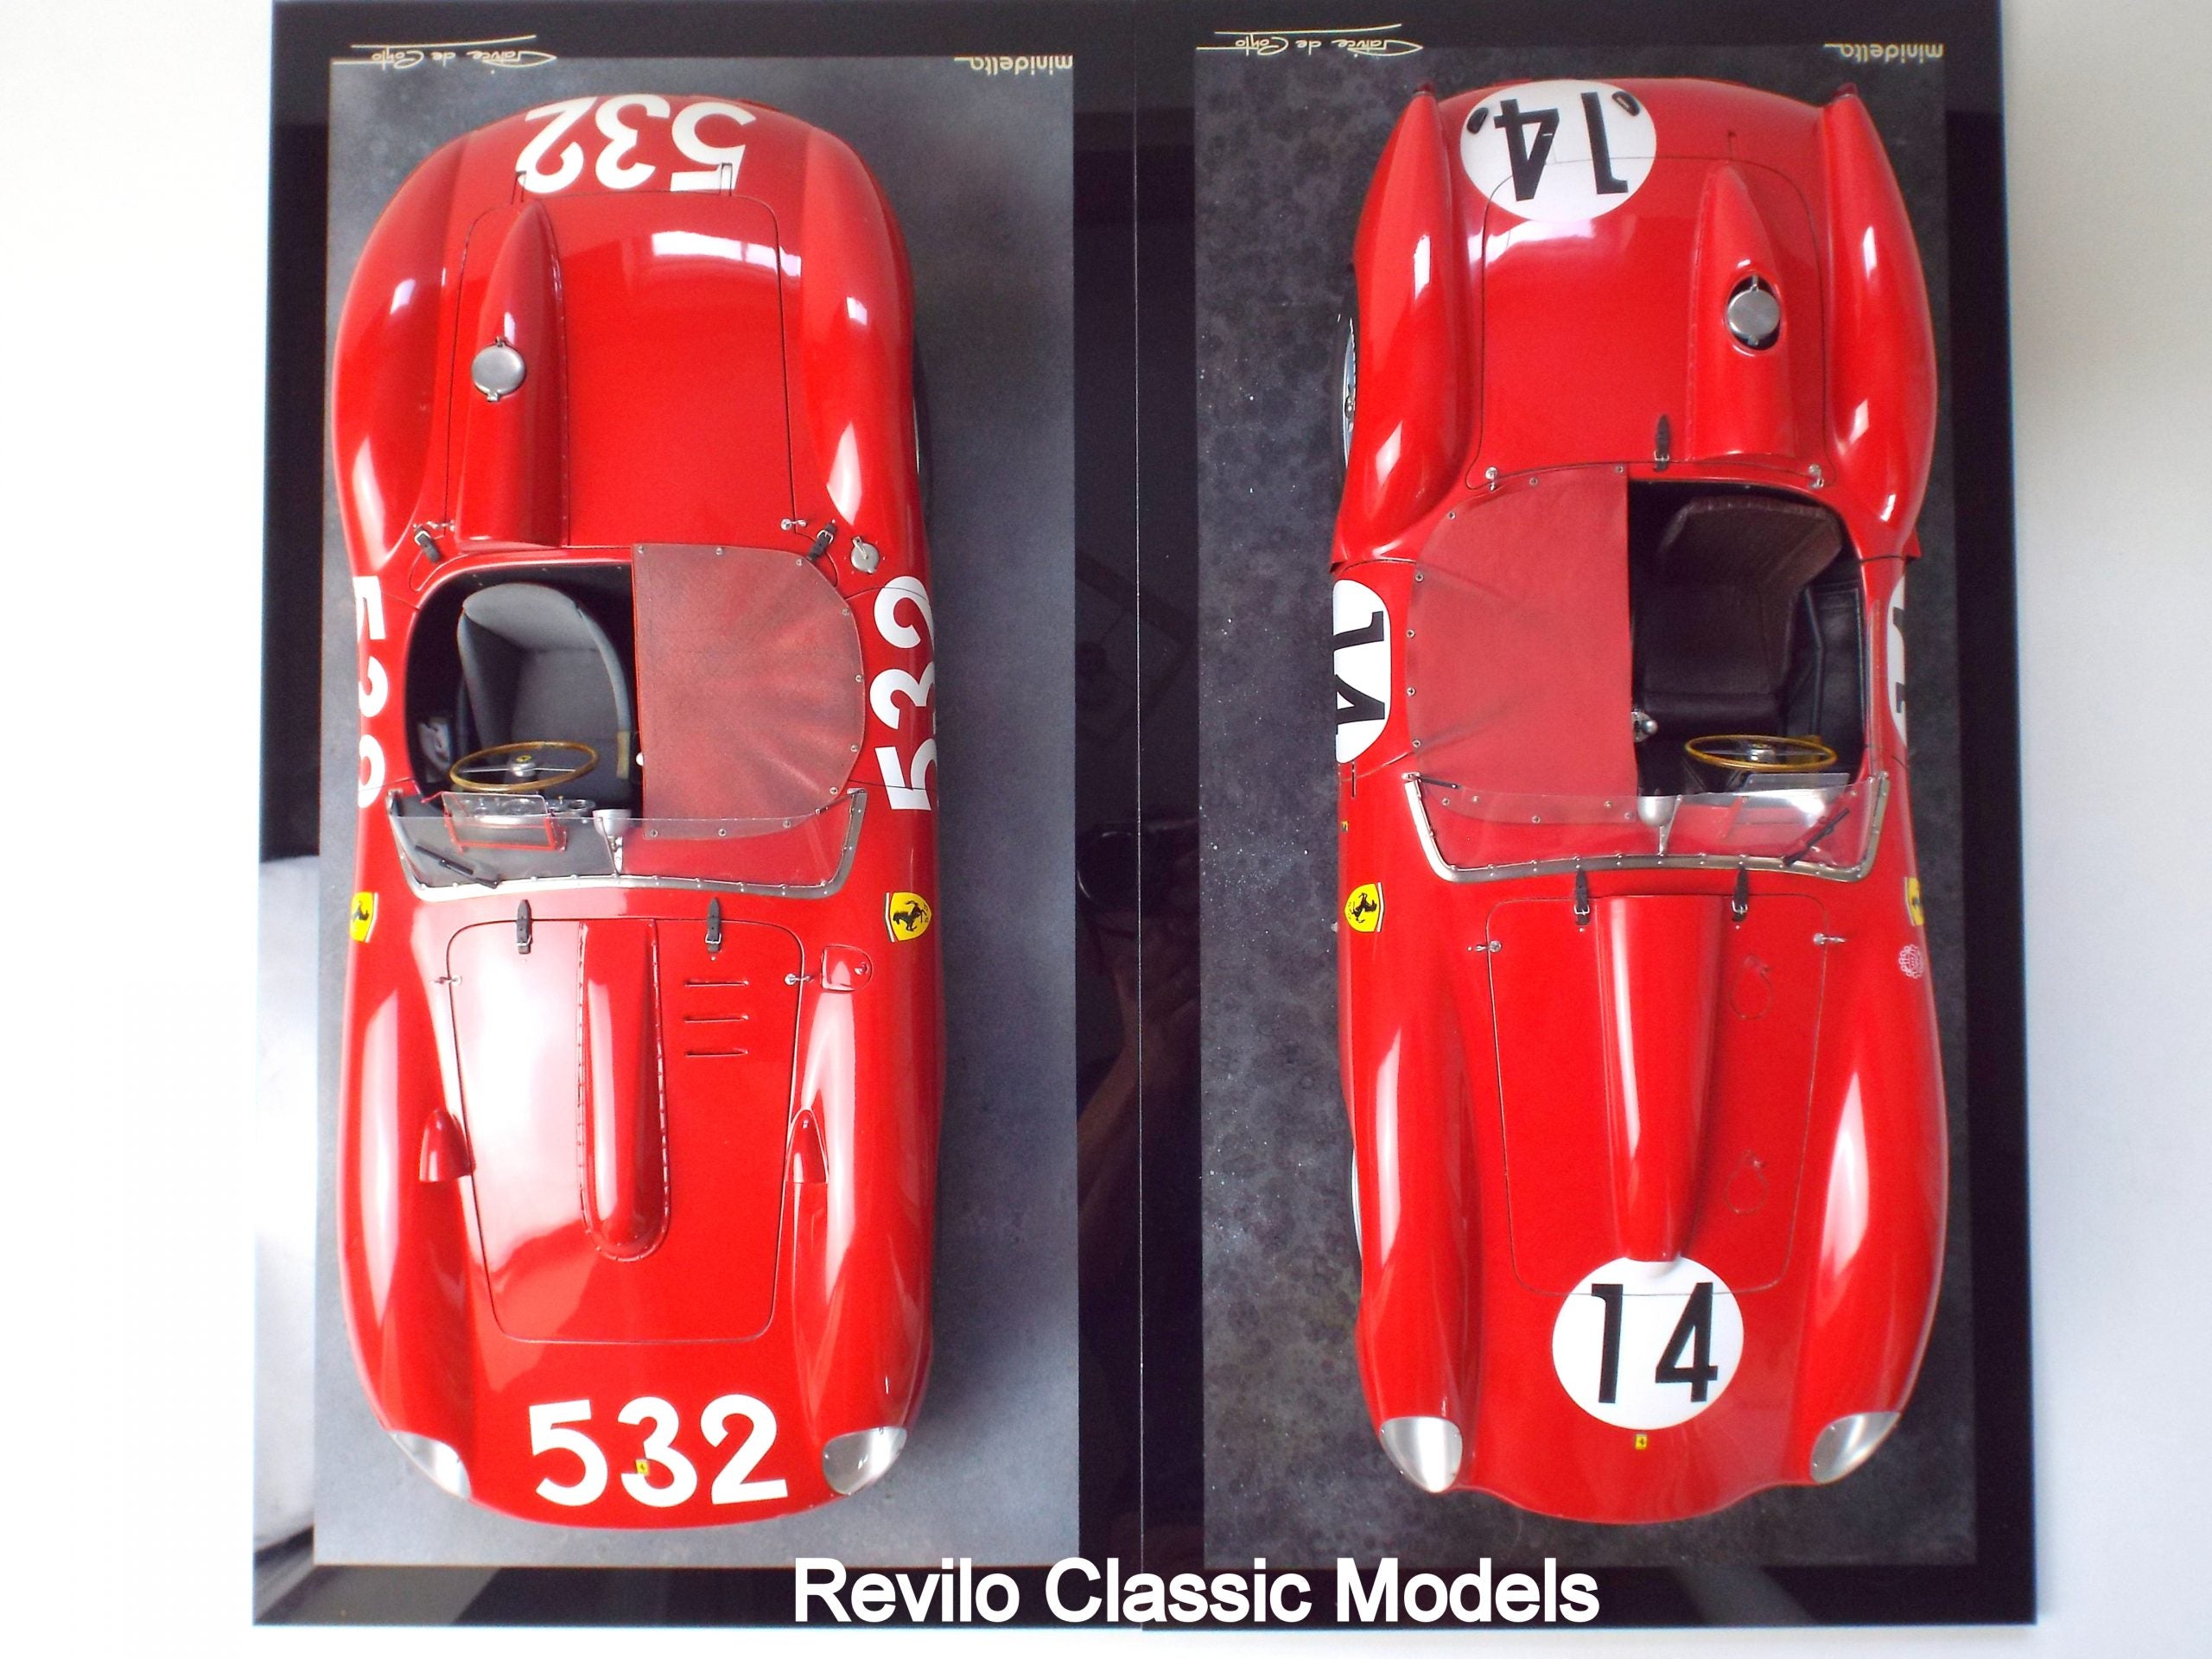 Patrice de Conto 1:8 scale Ferrari 315S 1957 Mille Miglia